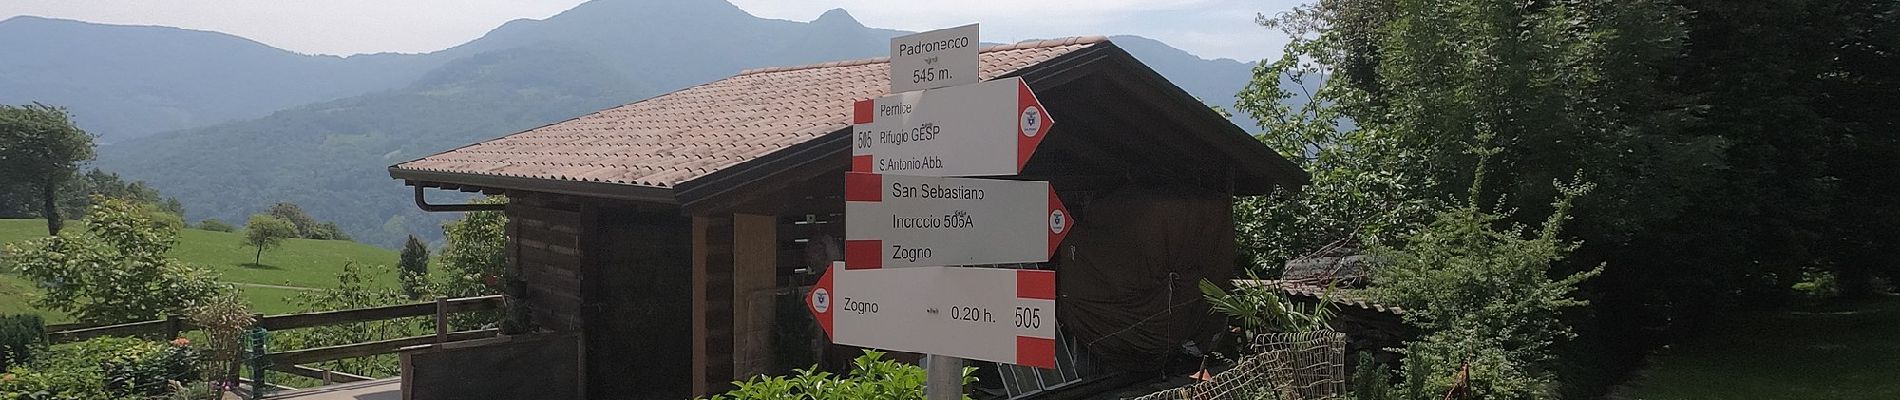 Percorso A piedi Val Brembilla - Sentiero 505A: Zogno - Tiglio - S. Antonio Abbandonato - Castignola - Photo